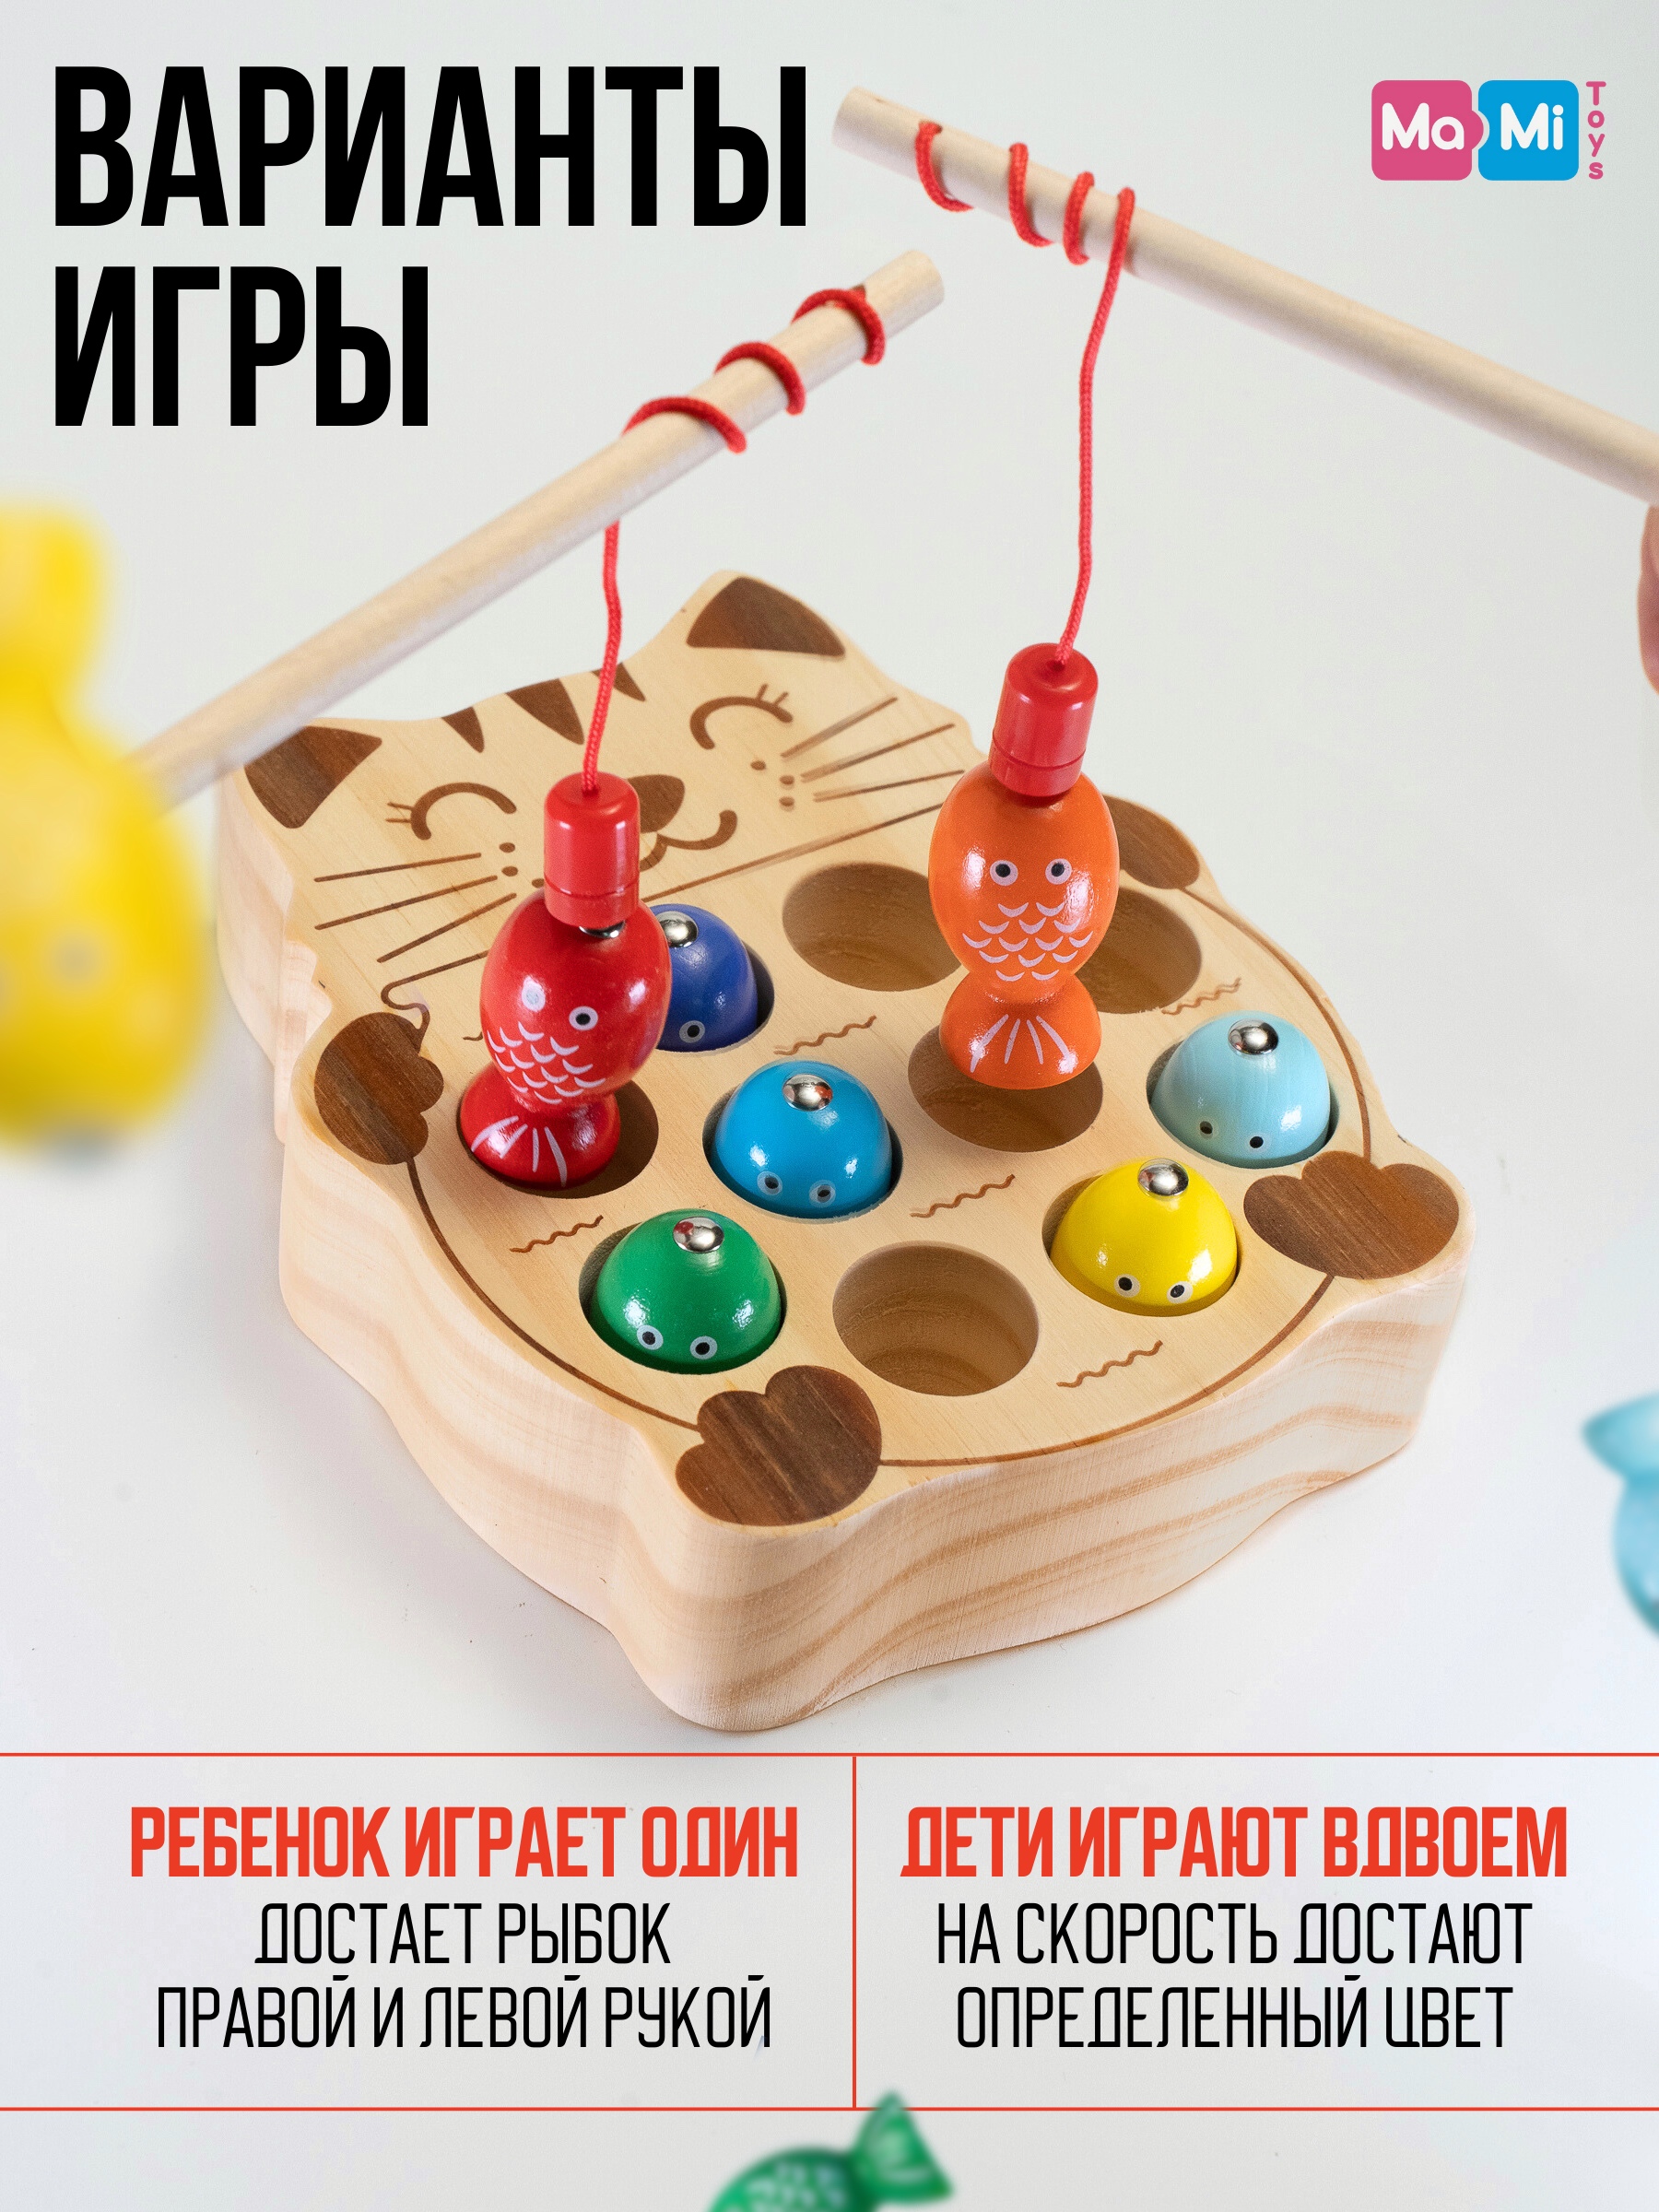 Магнитная рыбалка сортер Ma-Mi Toys Котик развивающая игра для малышей - фото 2